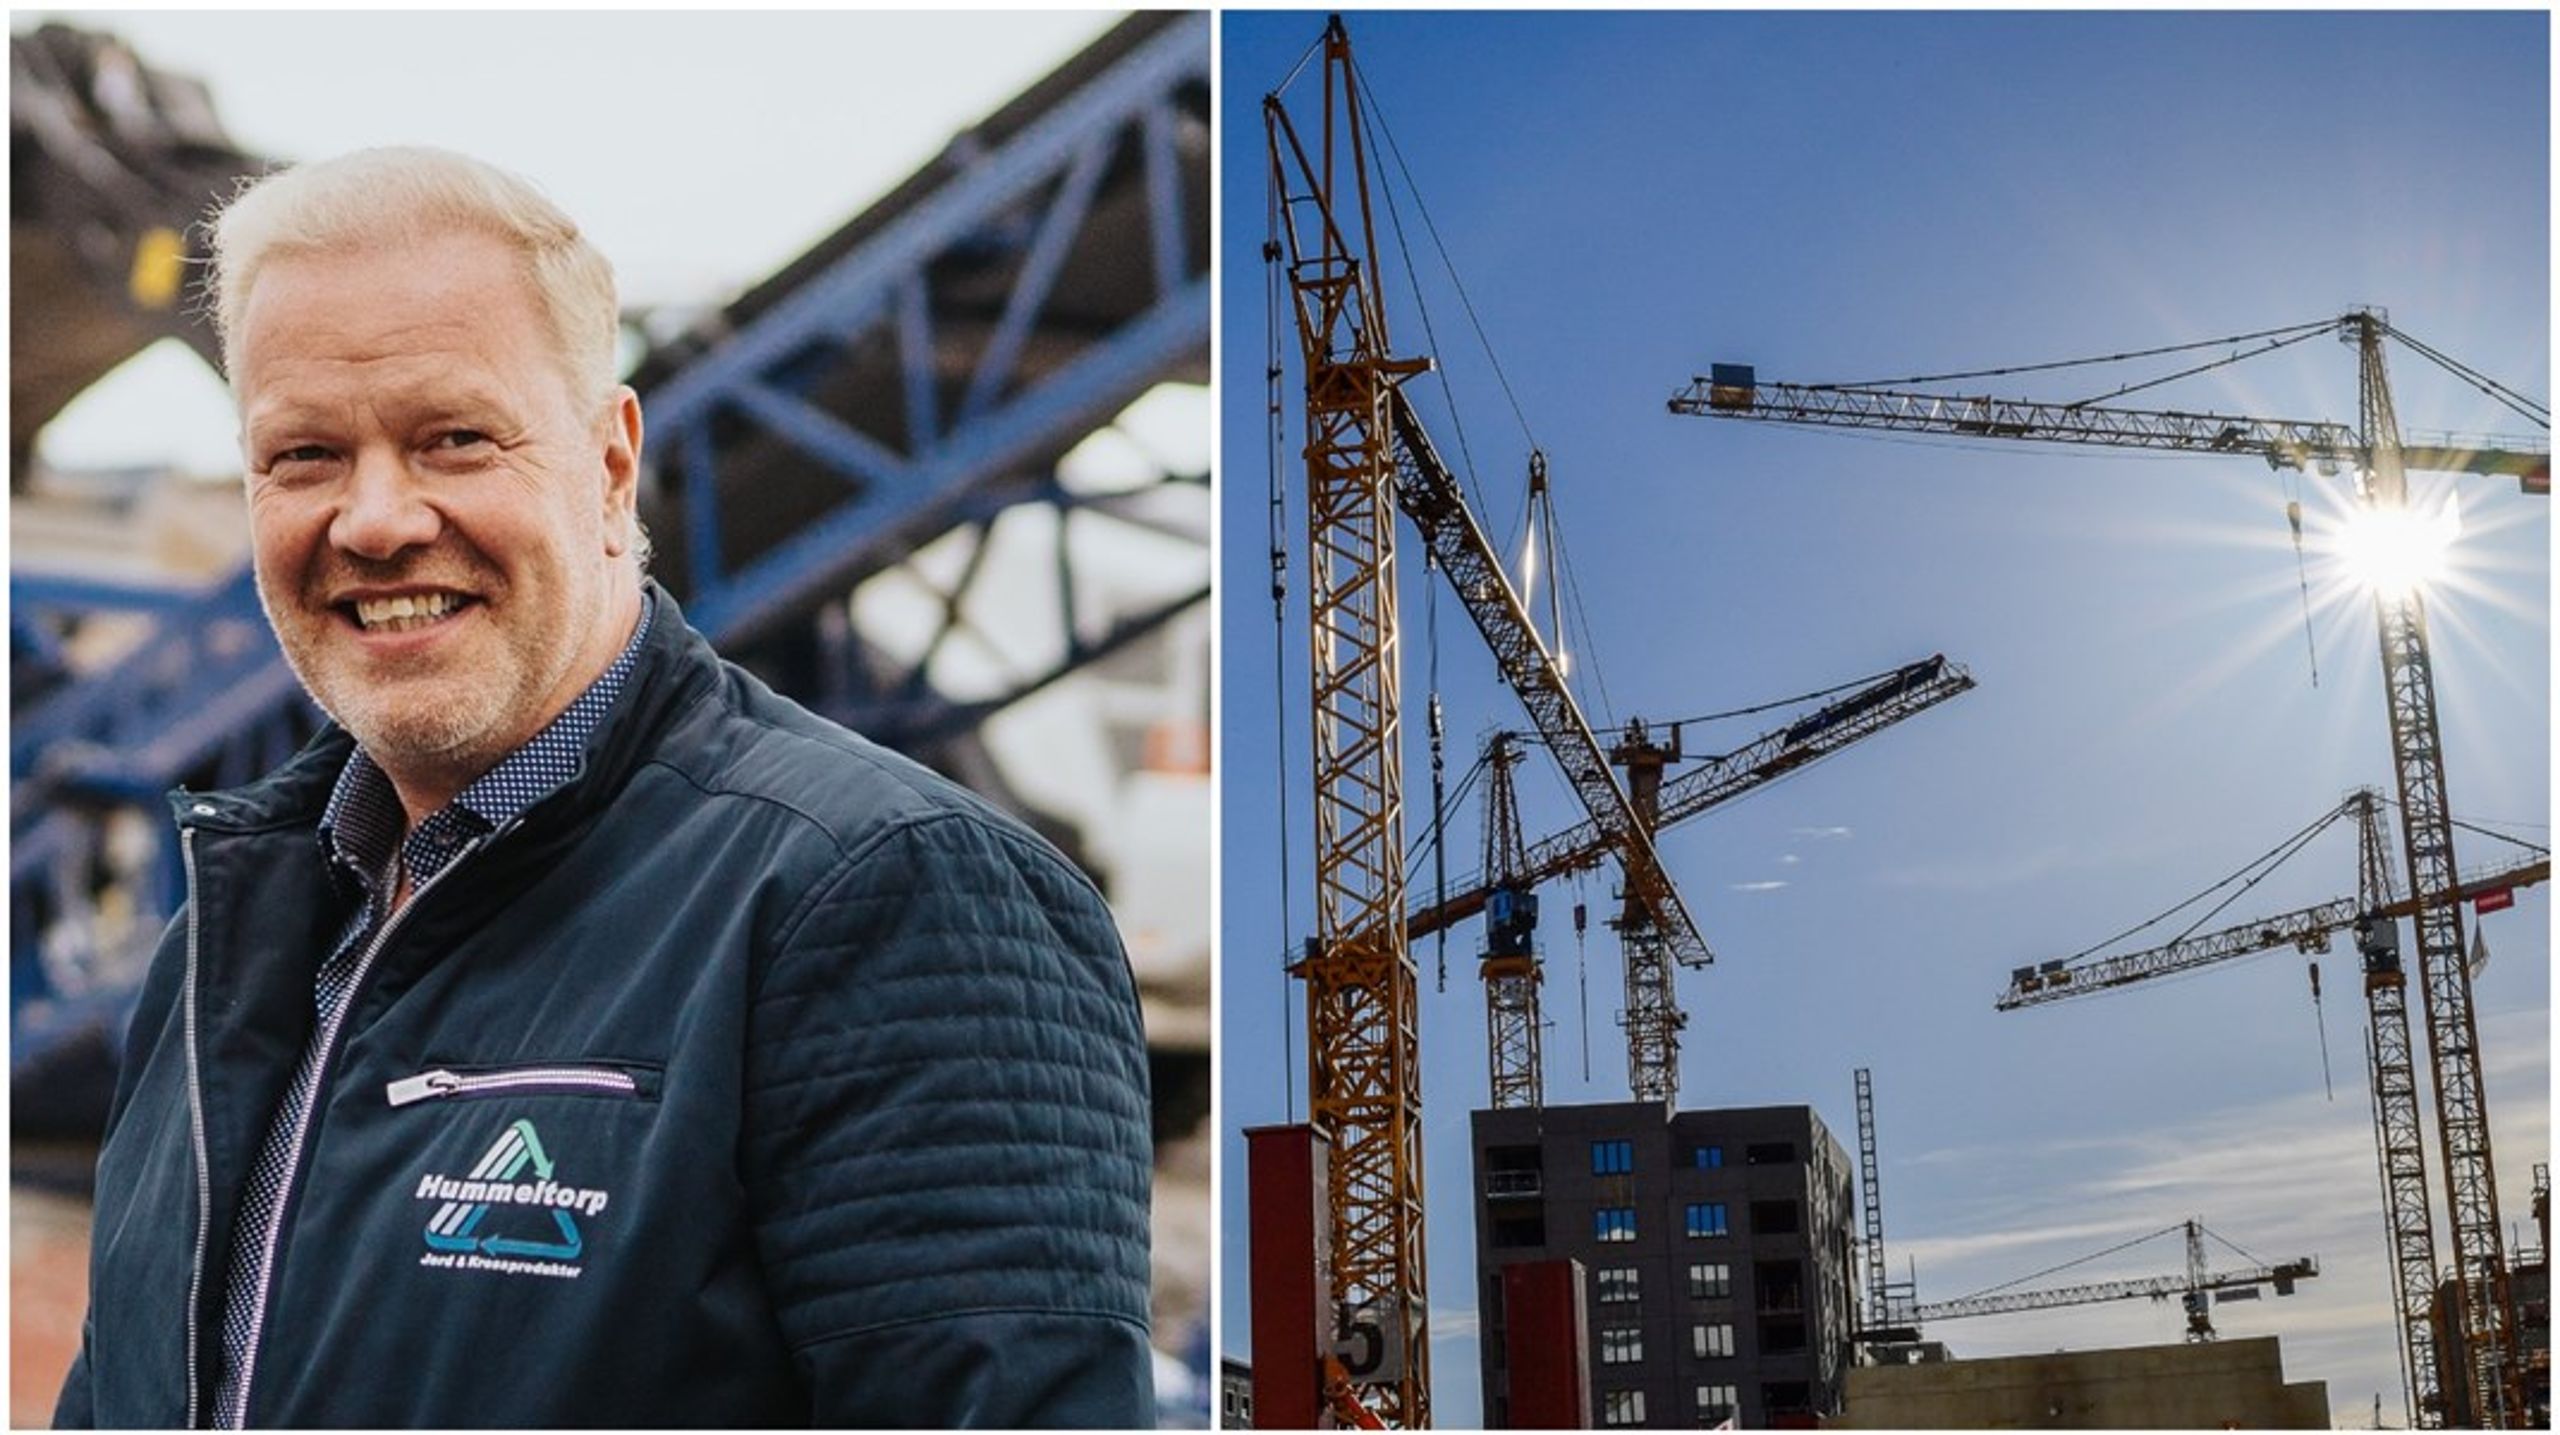 Människor förlorar jobb och inkomst samtidigt som Sverige behöver enorma investeringar i infrastruktur, skriver debattören.